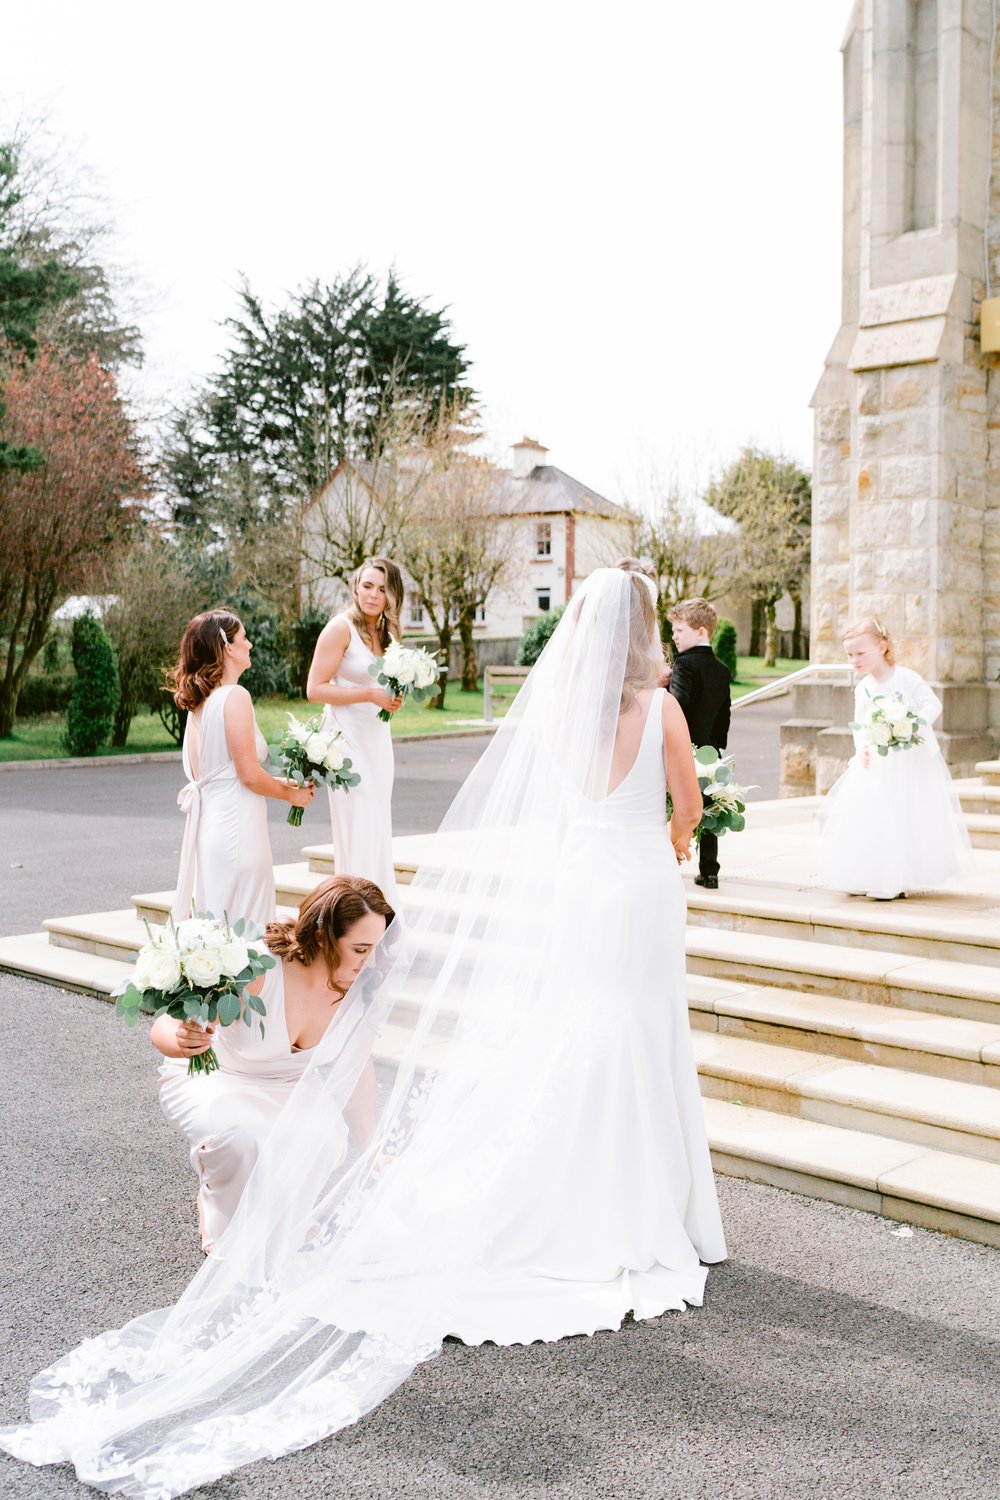 Lough Rynn wedding, wedding photographer Ireland, black tie wedding, Castle wedding Ireland,-29.jpg